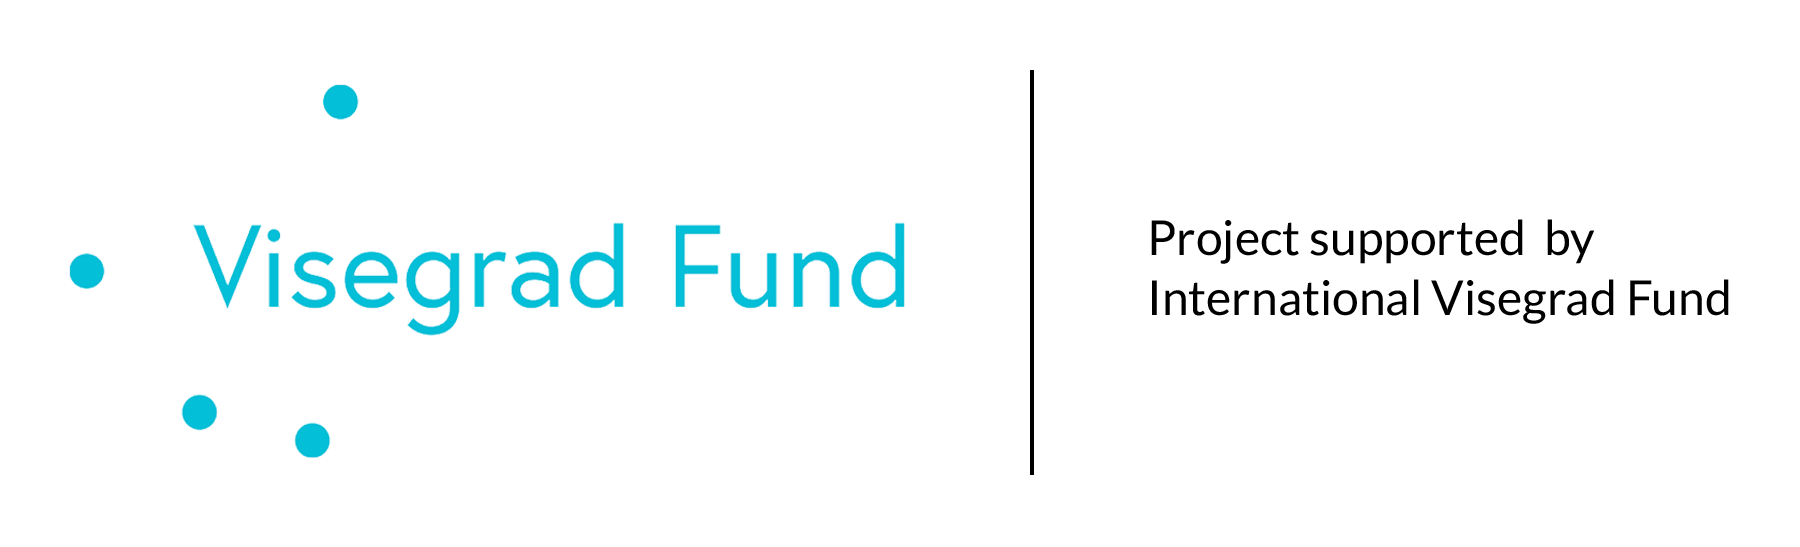 V4 fund